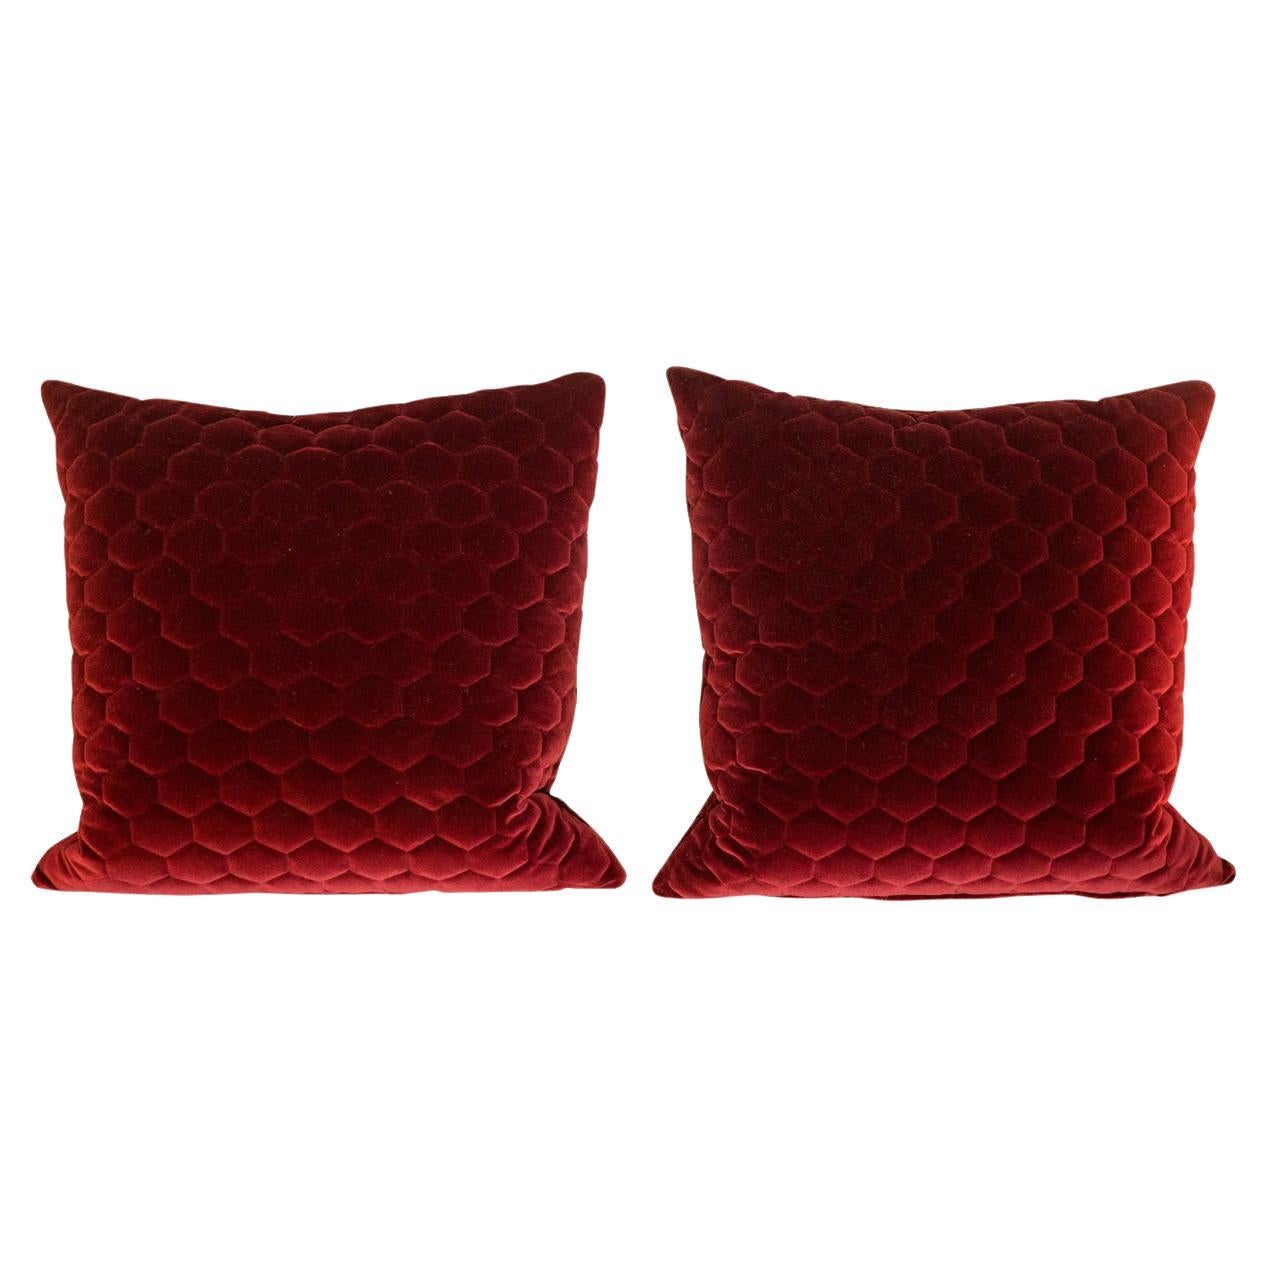 Red Velvet Custom Made Geometrical Pillows - a Pair